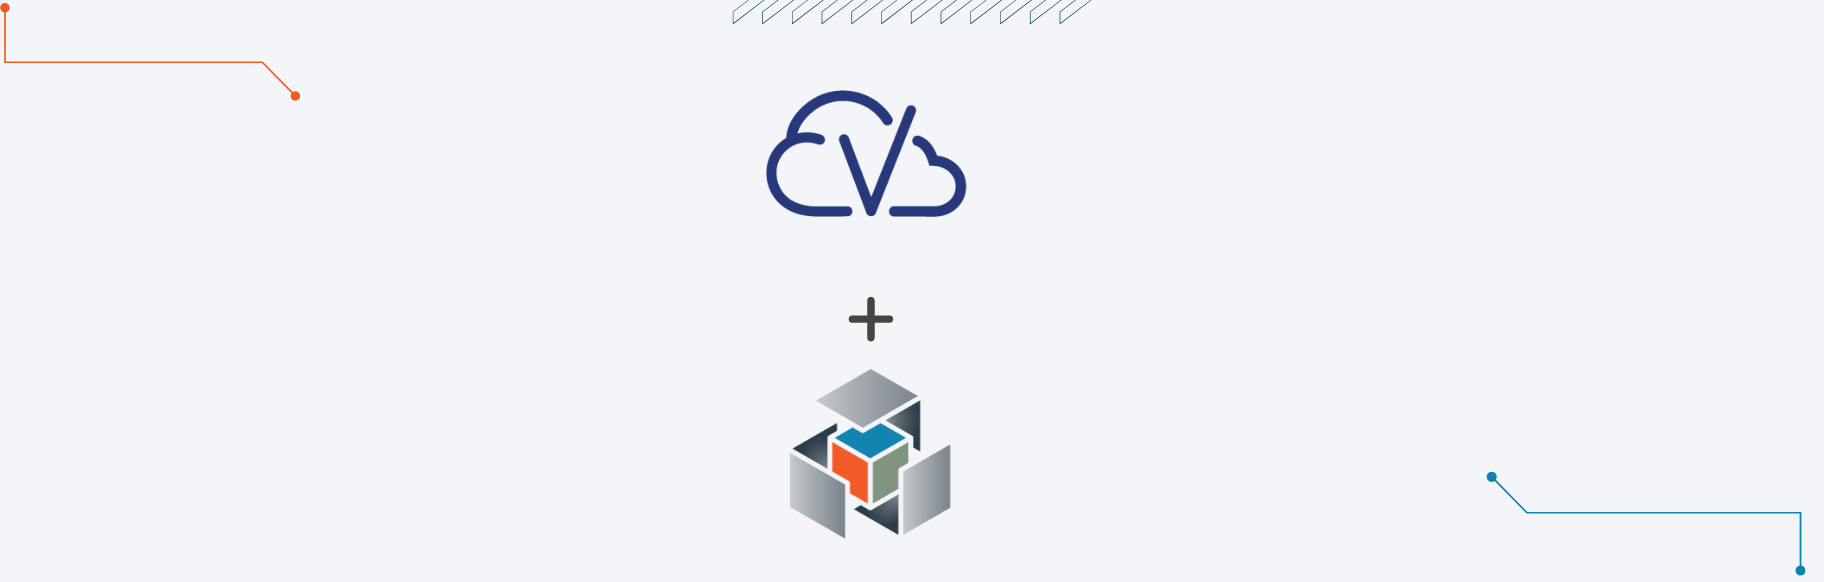 Cloudvirga Announces Expanded Integration with Informative Research's Verification Platform